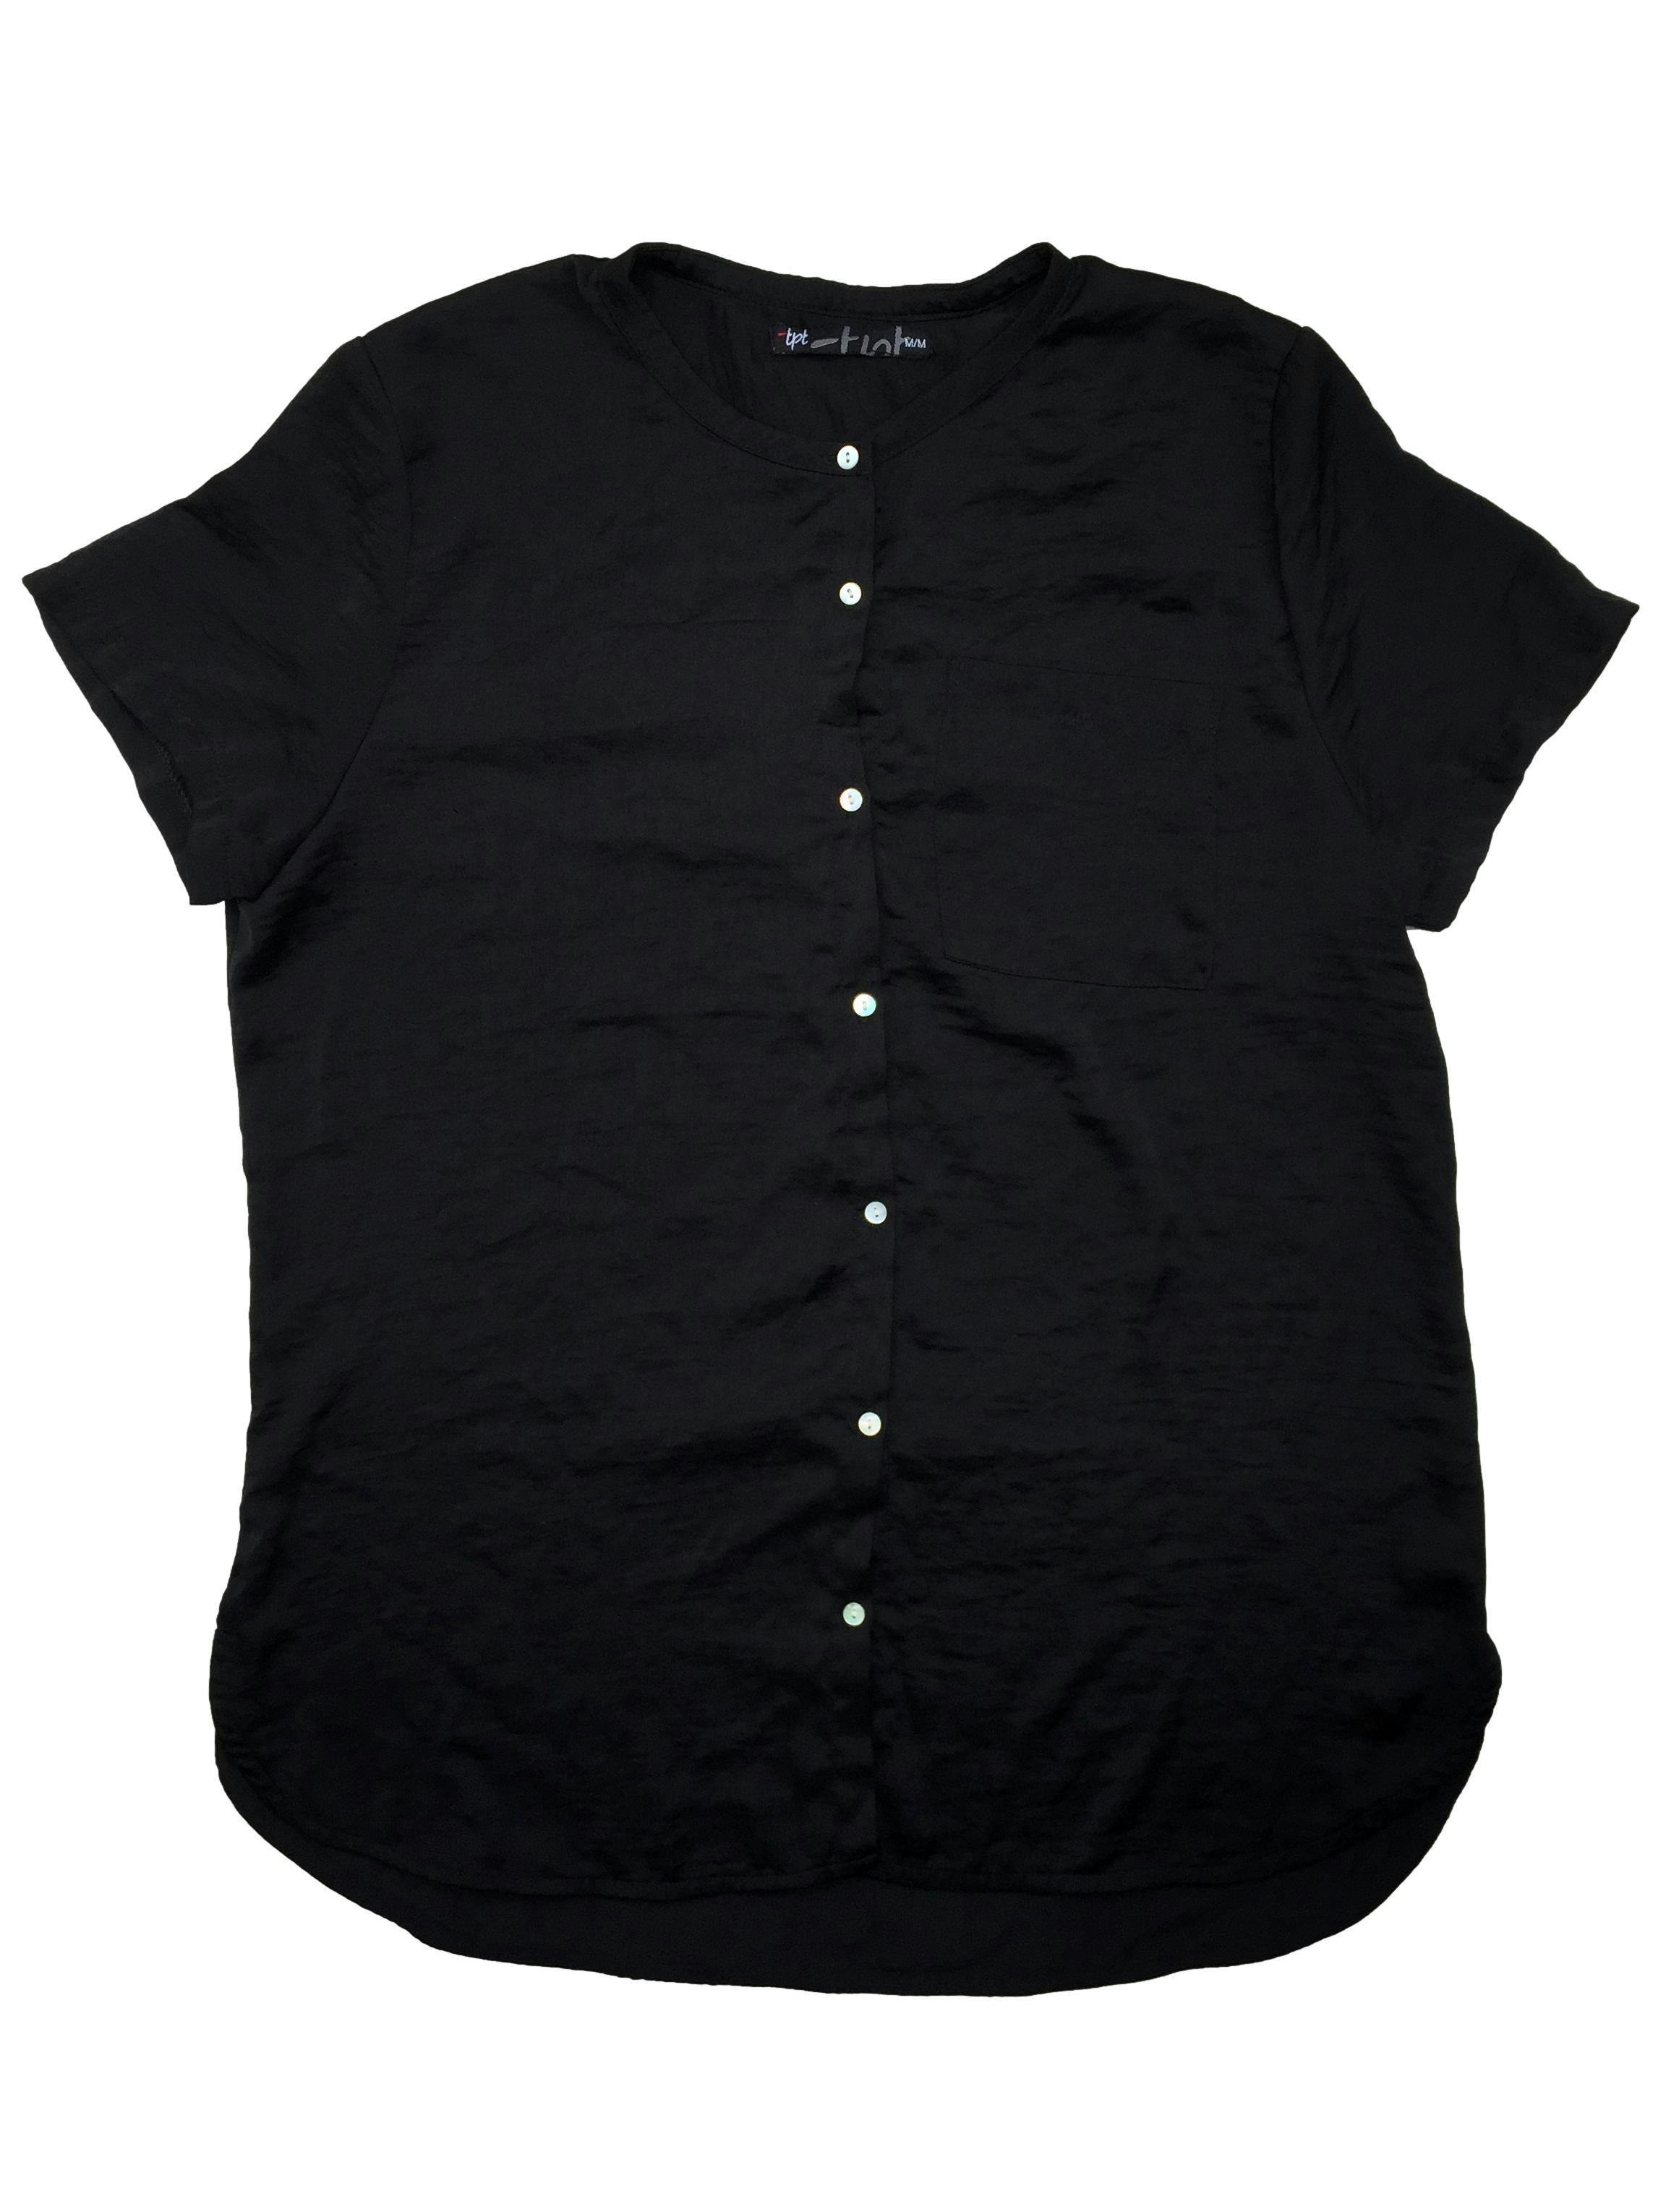 Blusa negra Topitop de cuello nerú, botones delanteros, one pocket. Busto 106 cm, Largo 70 cm.